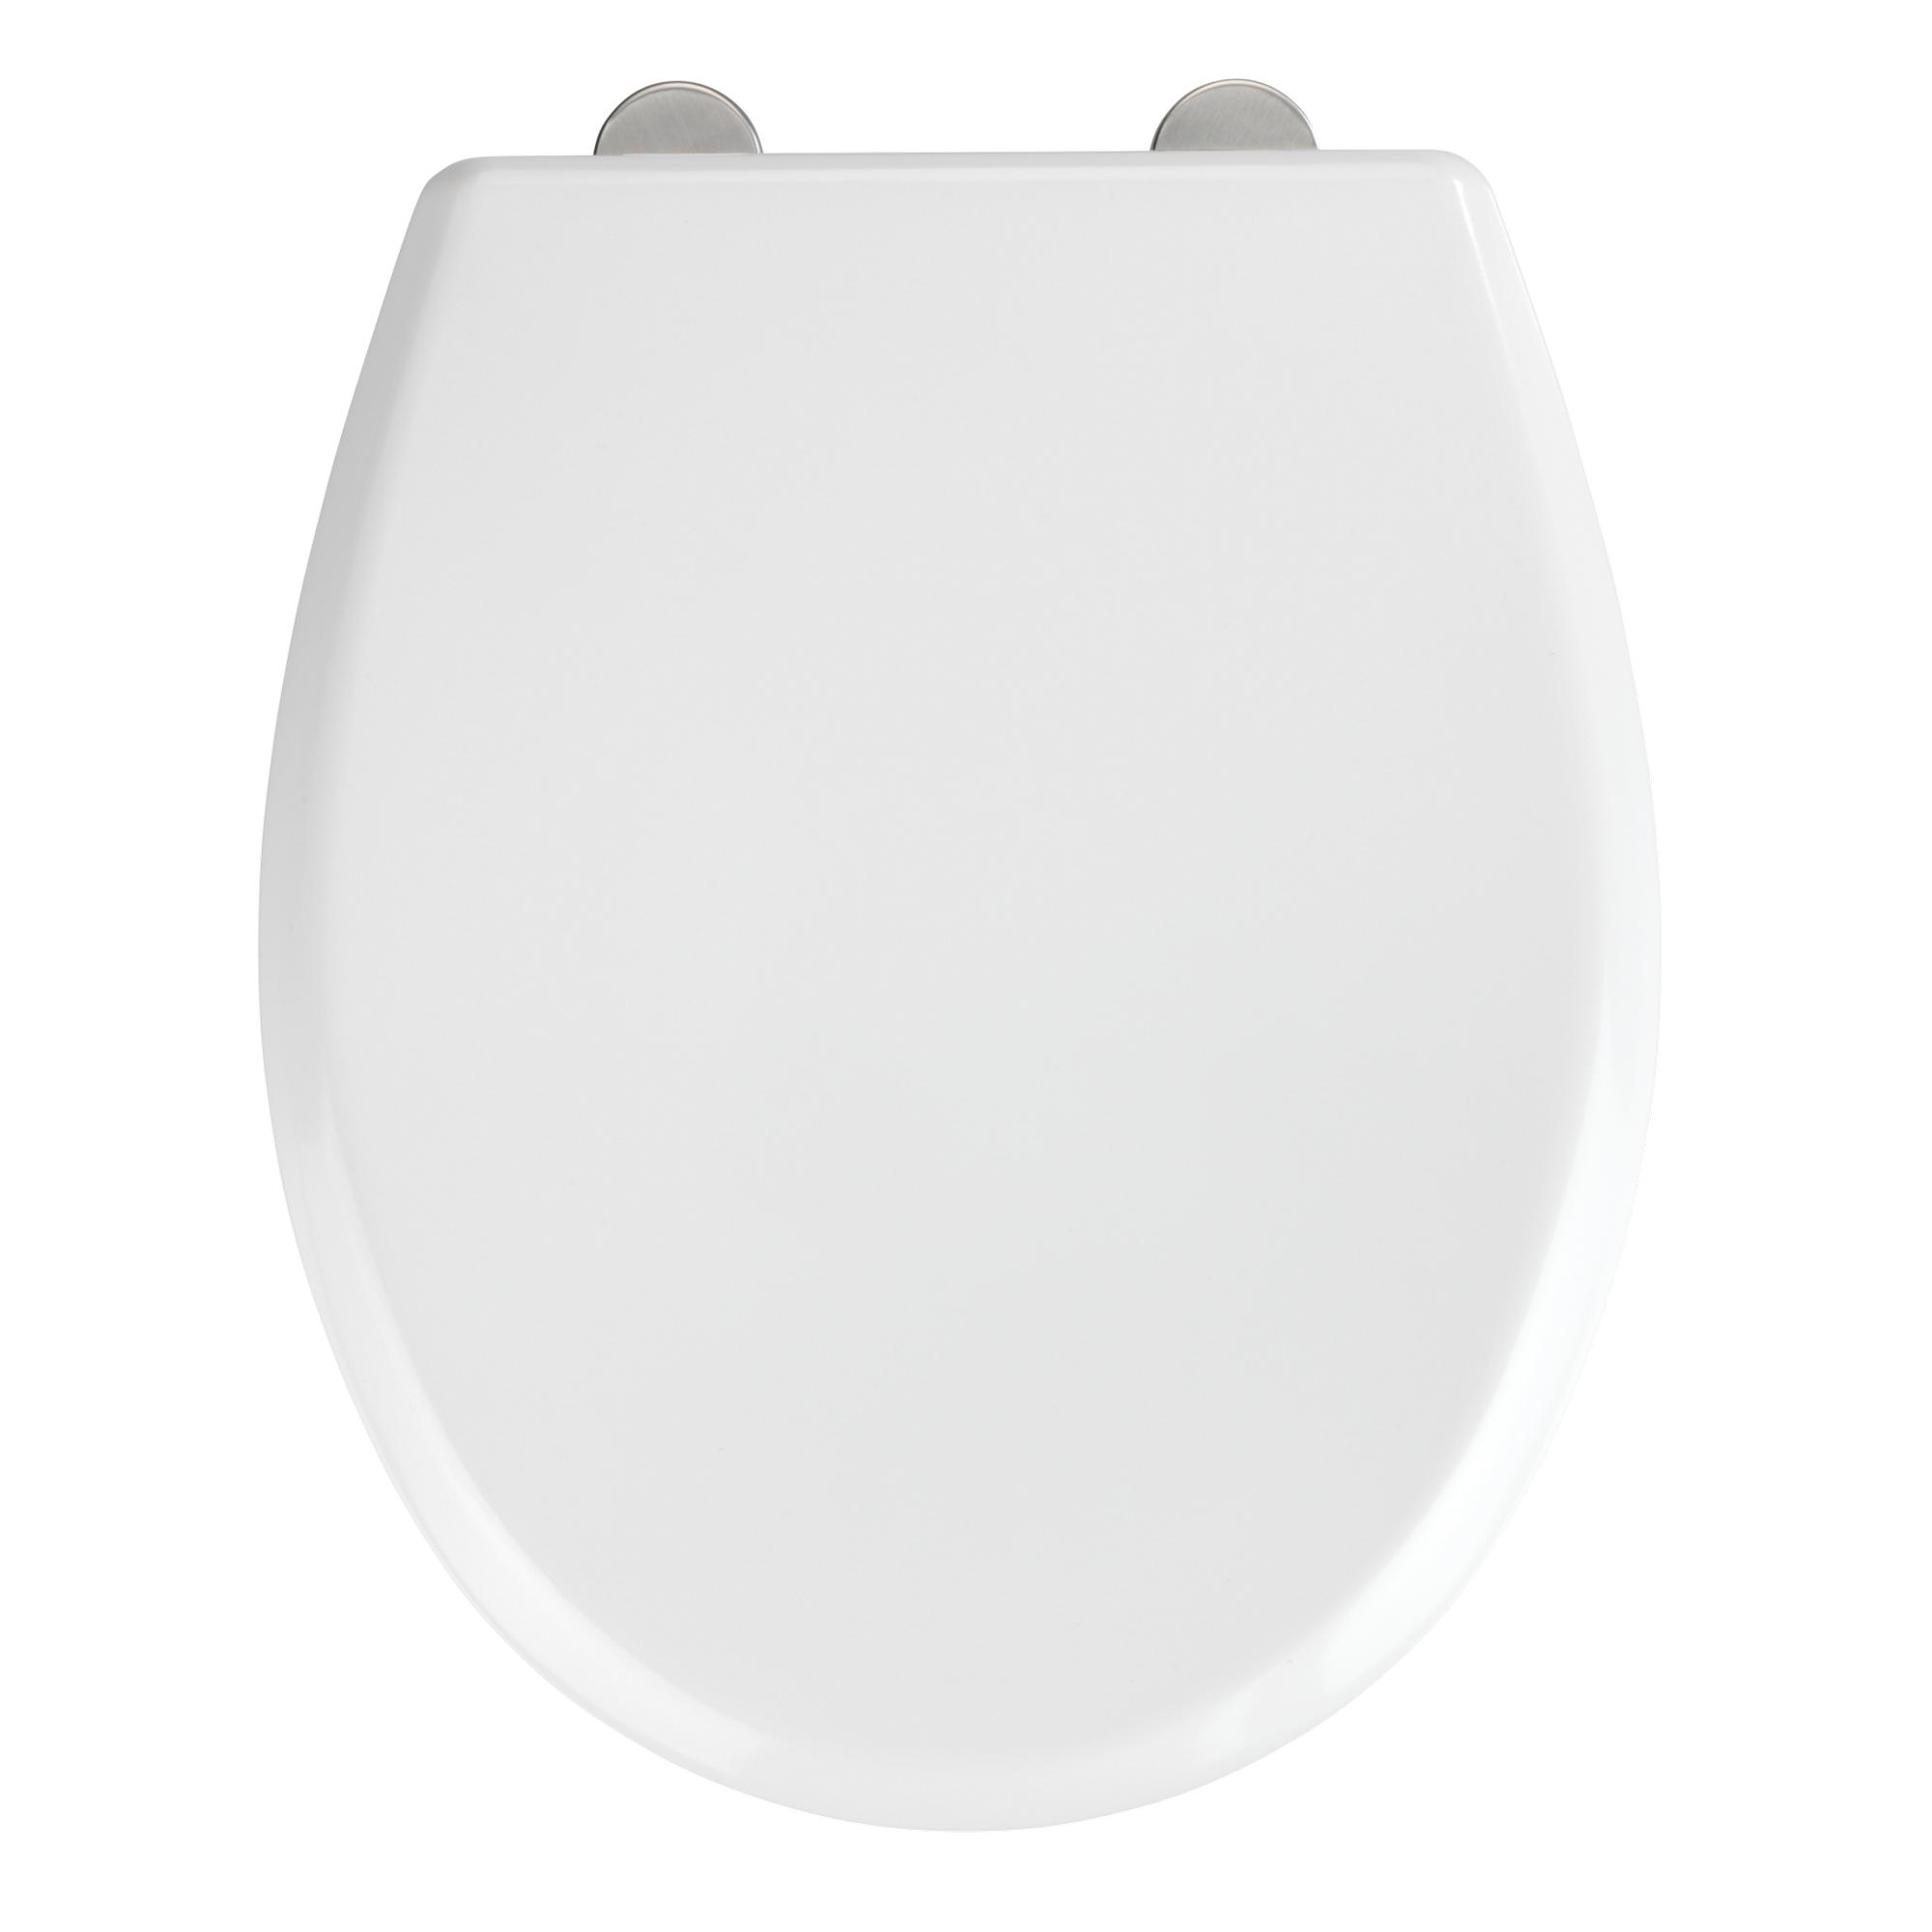 WC-Sitz 'Gubbio' Duroplast weiß, Absenkautomatik 44,5 x 37 cm + product picture